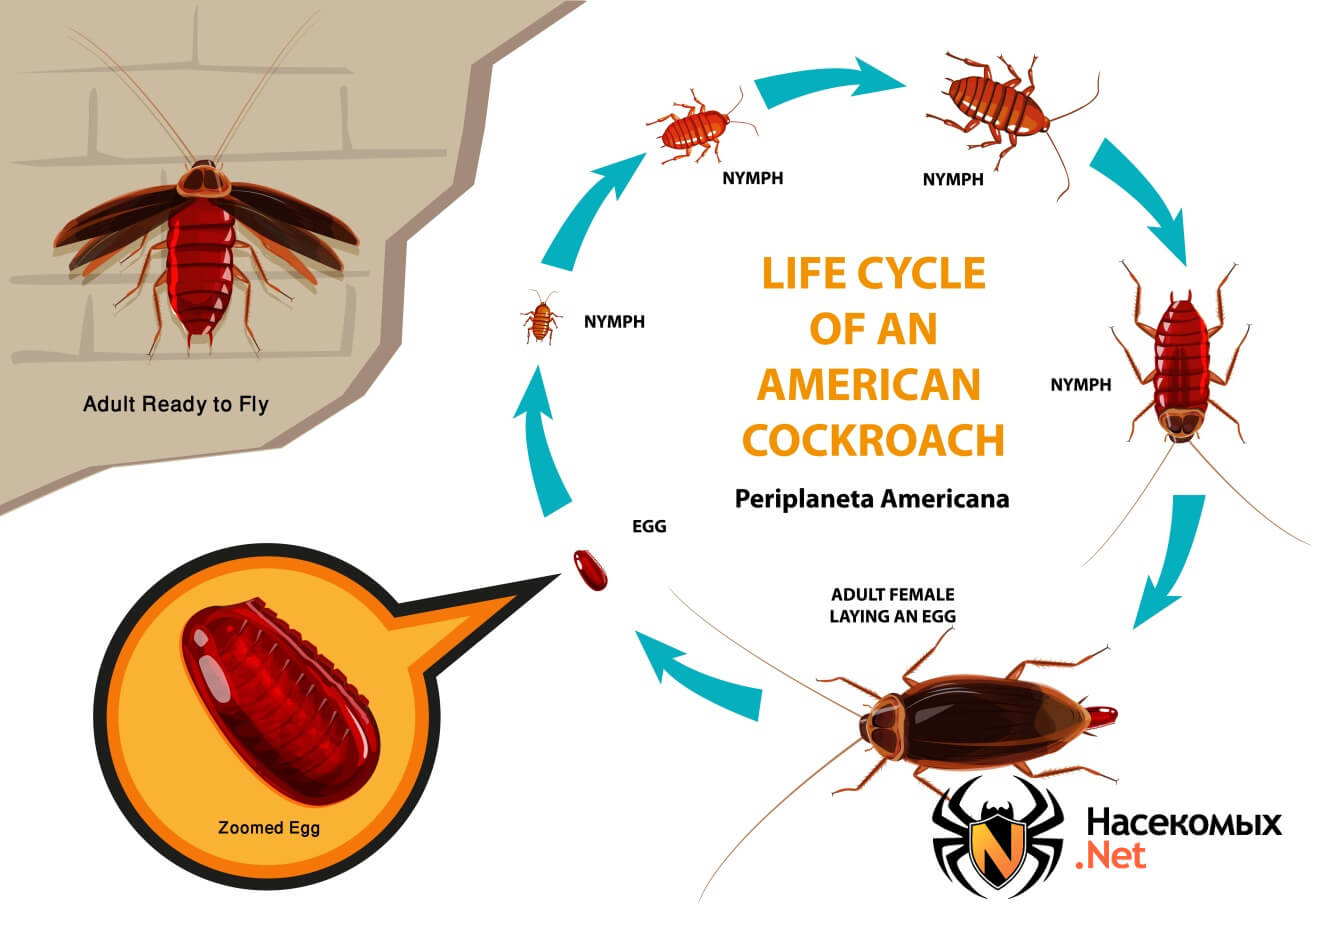 Черные и рыжие тараканы: как размножаются и сколько живут